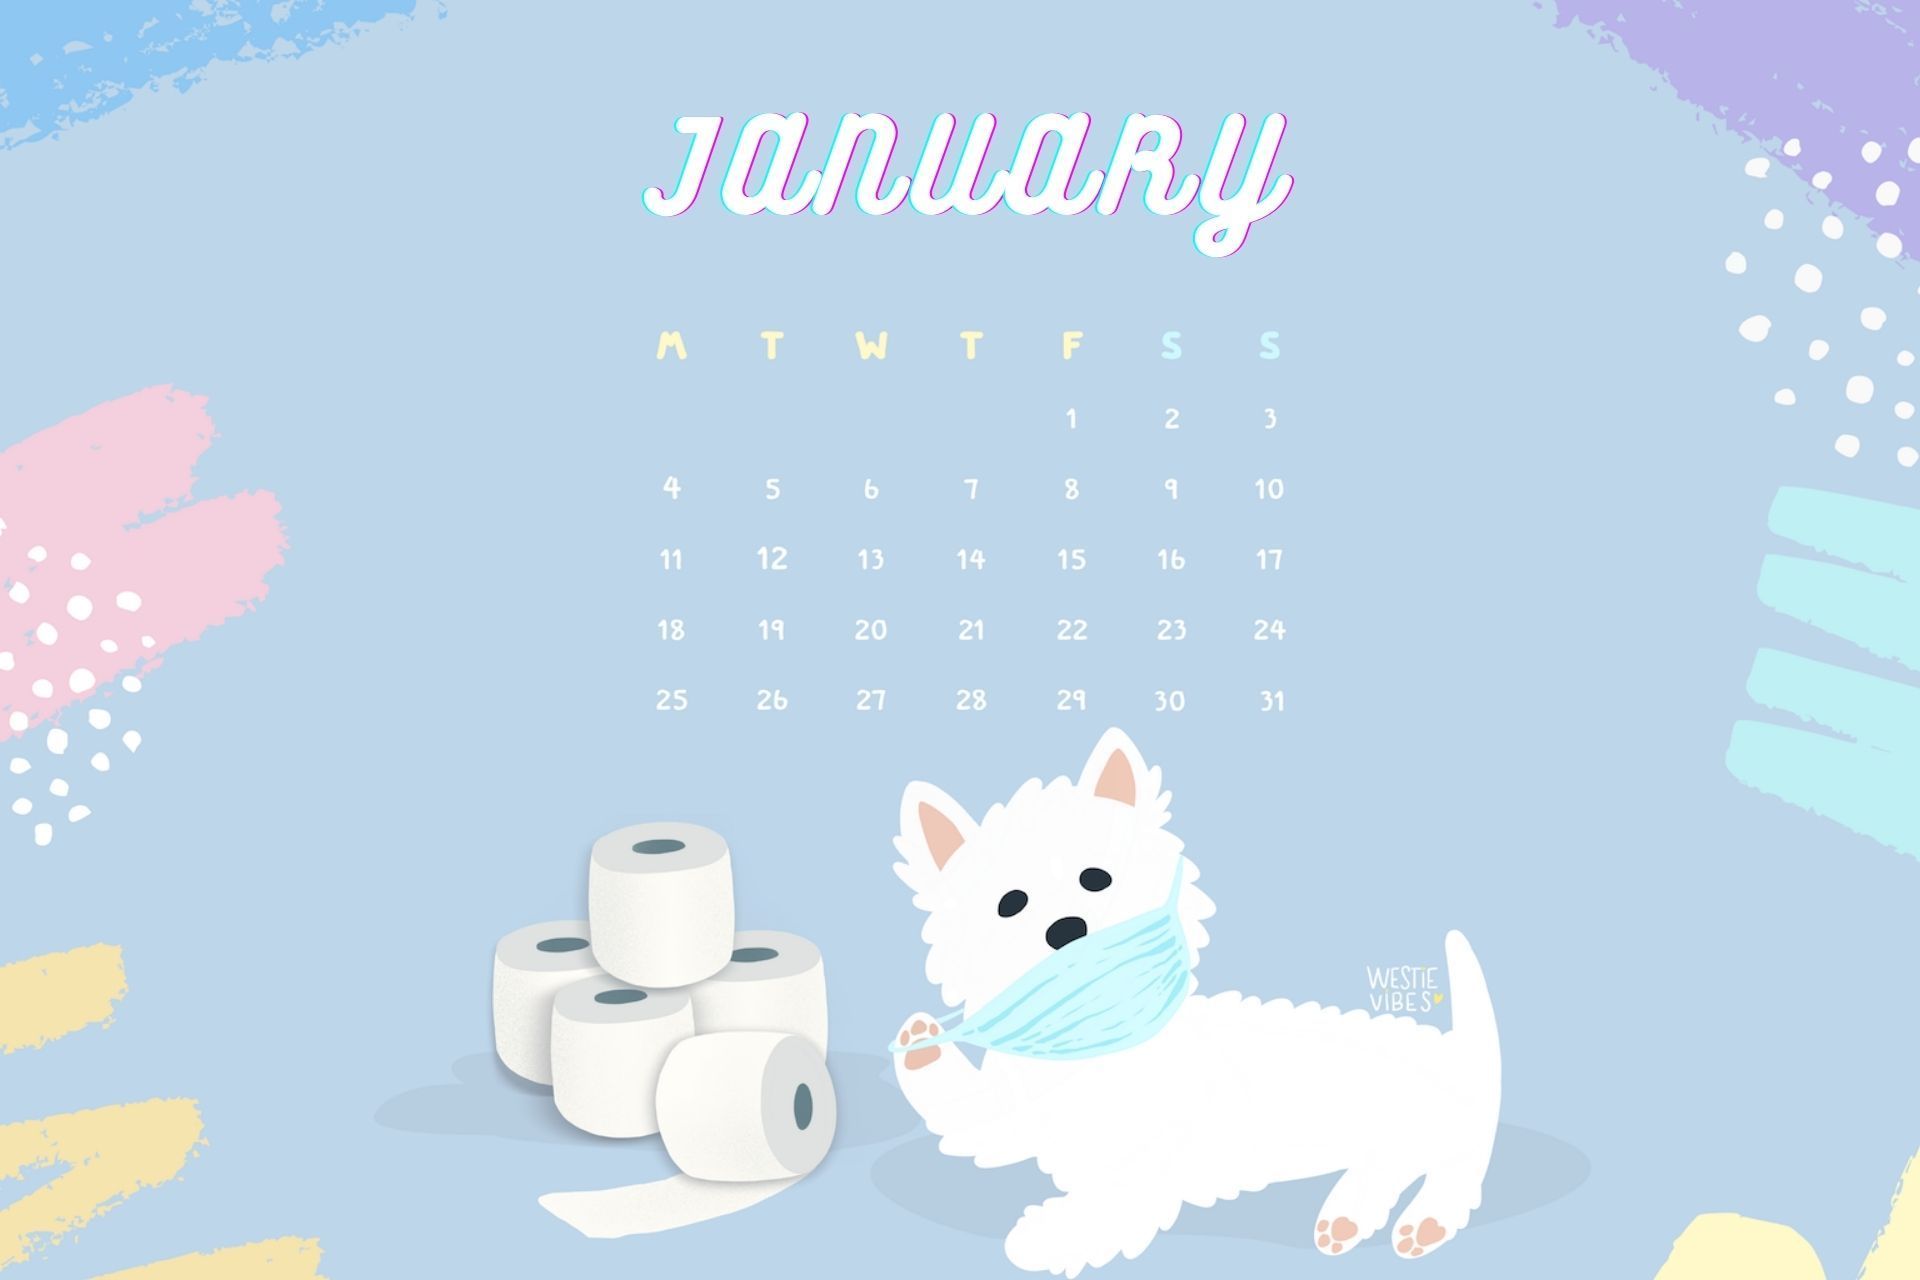 January 2021 HD Calendar Wallpaper featuring cute puppy. Calendar wallpaper, Free printable calendar , 2021 calendar